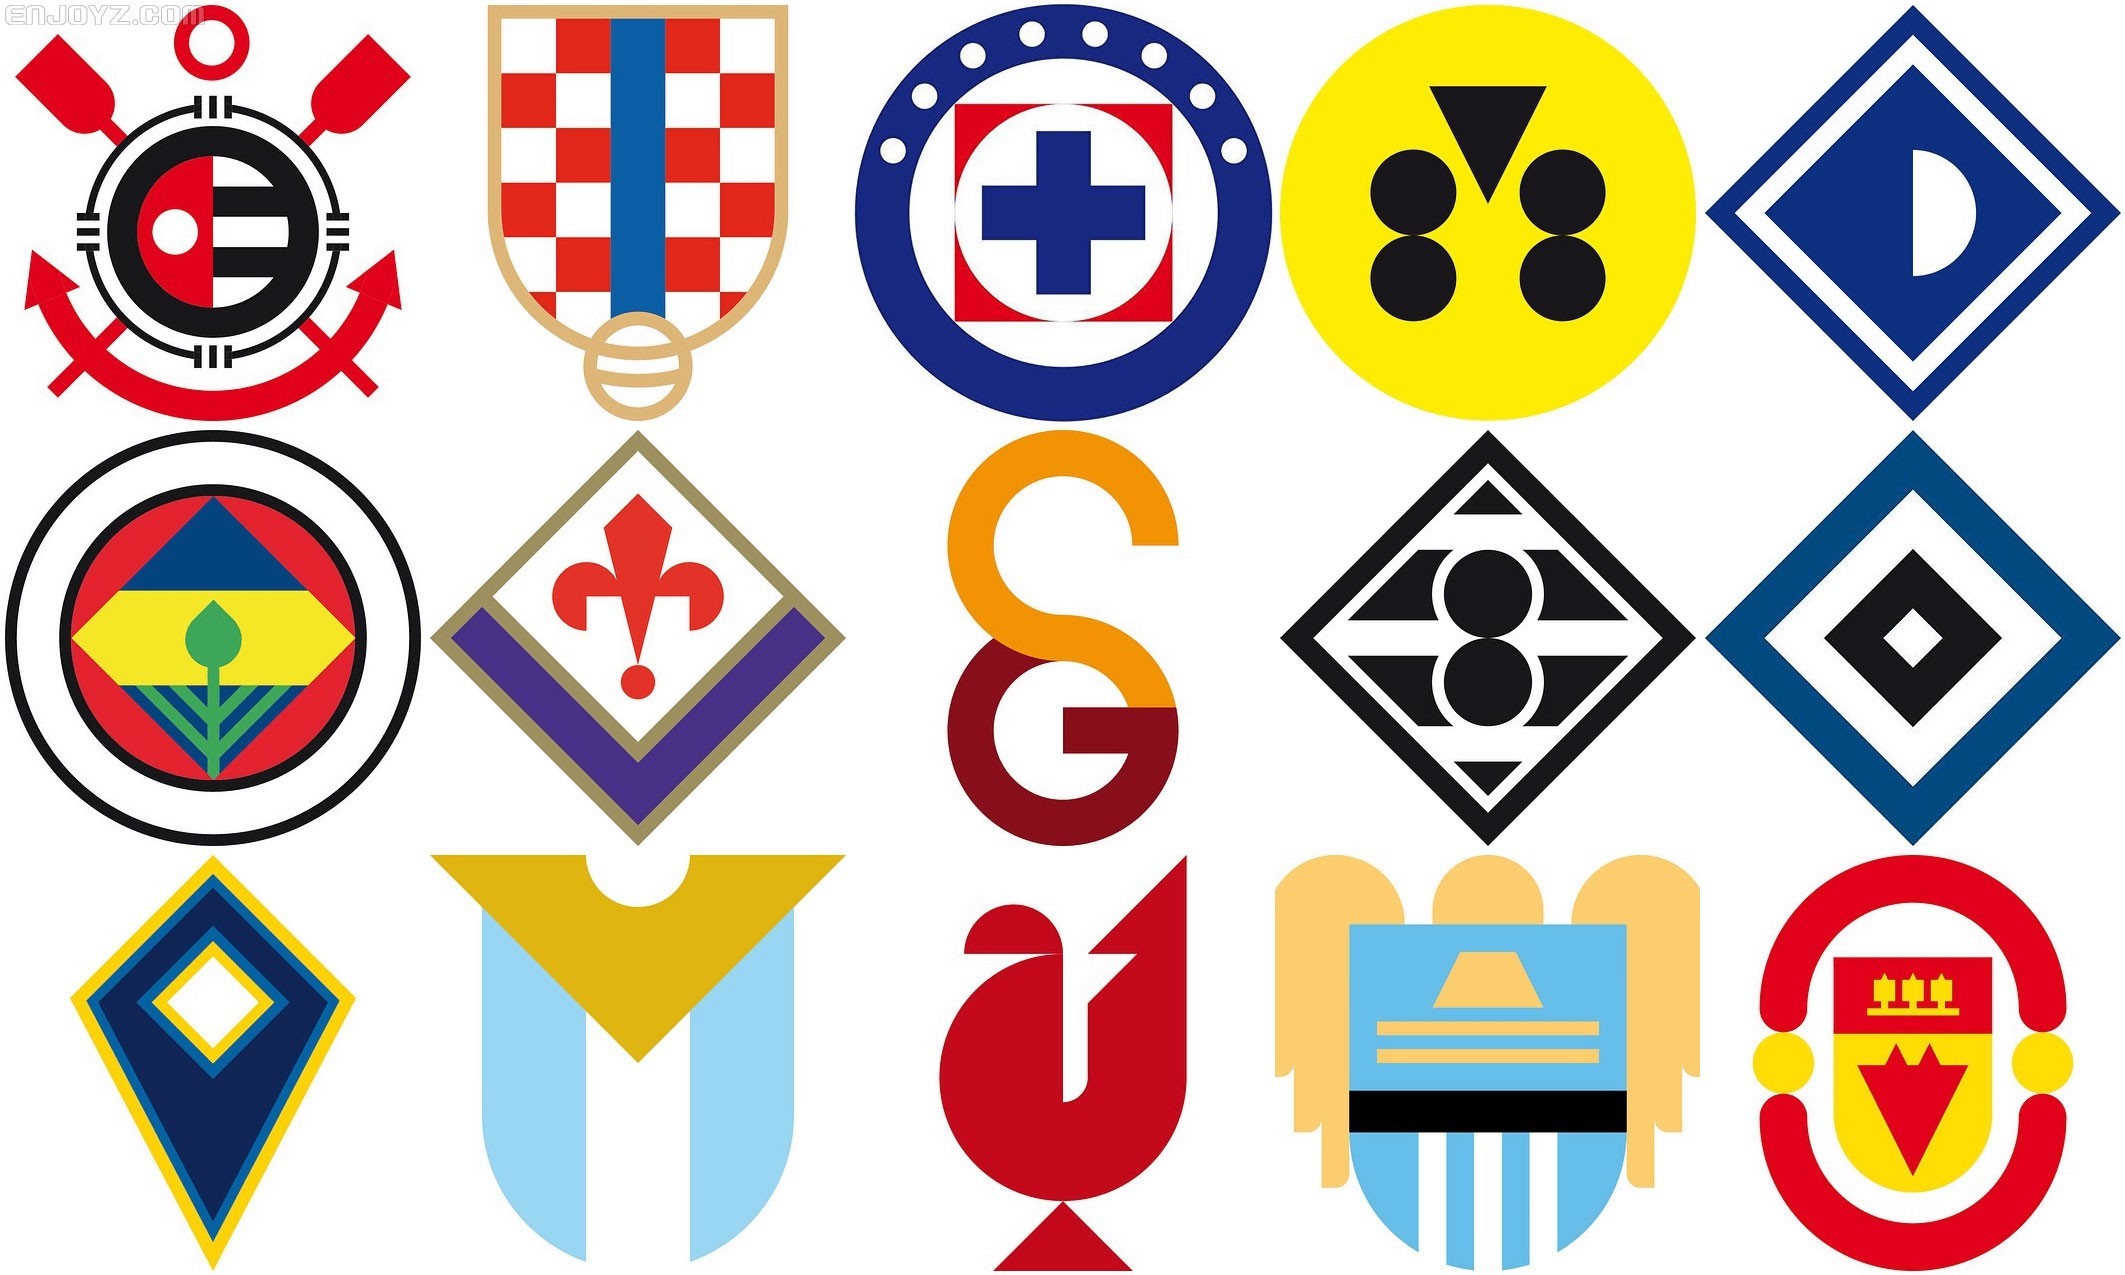 球队的队徽,按照他的理解,被设计成了几何学里最简单最常见的图像形态